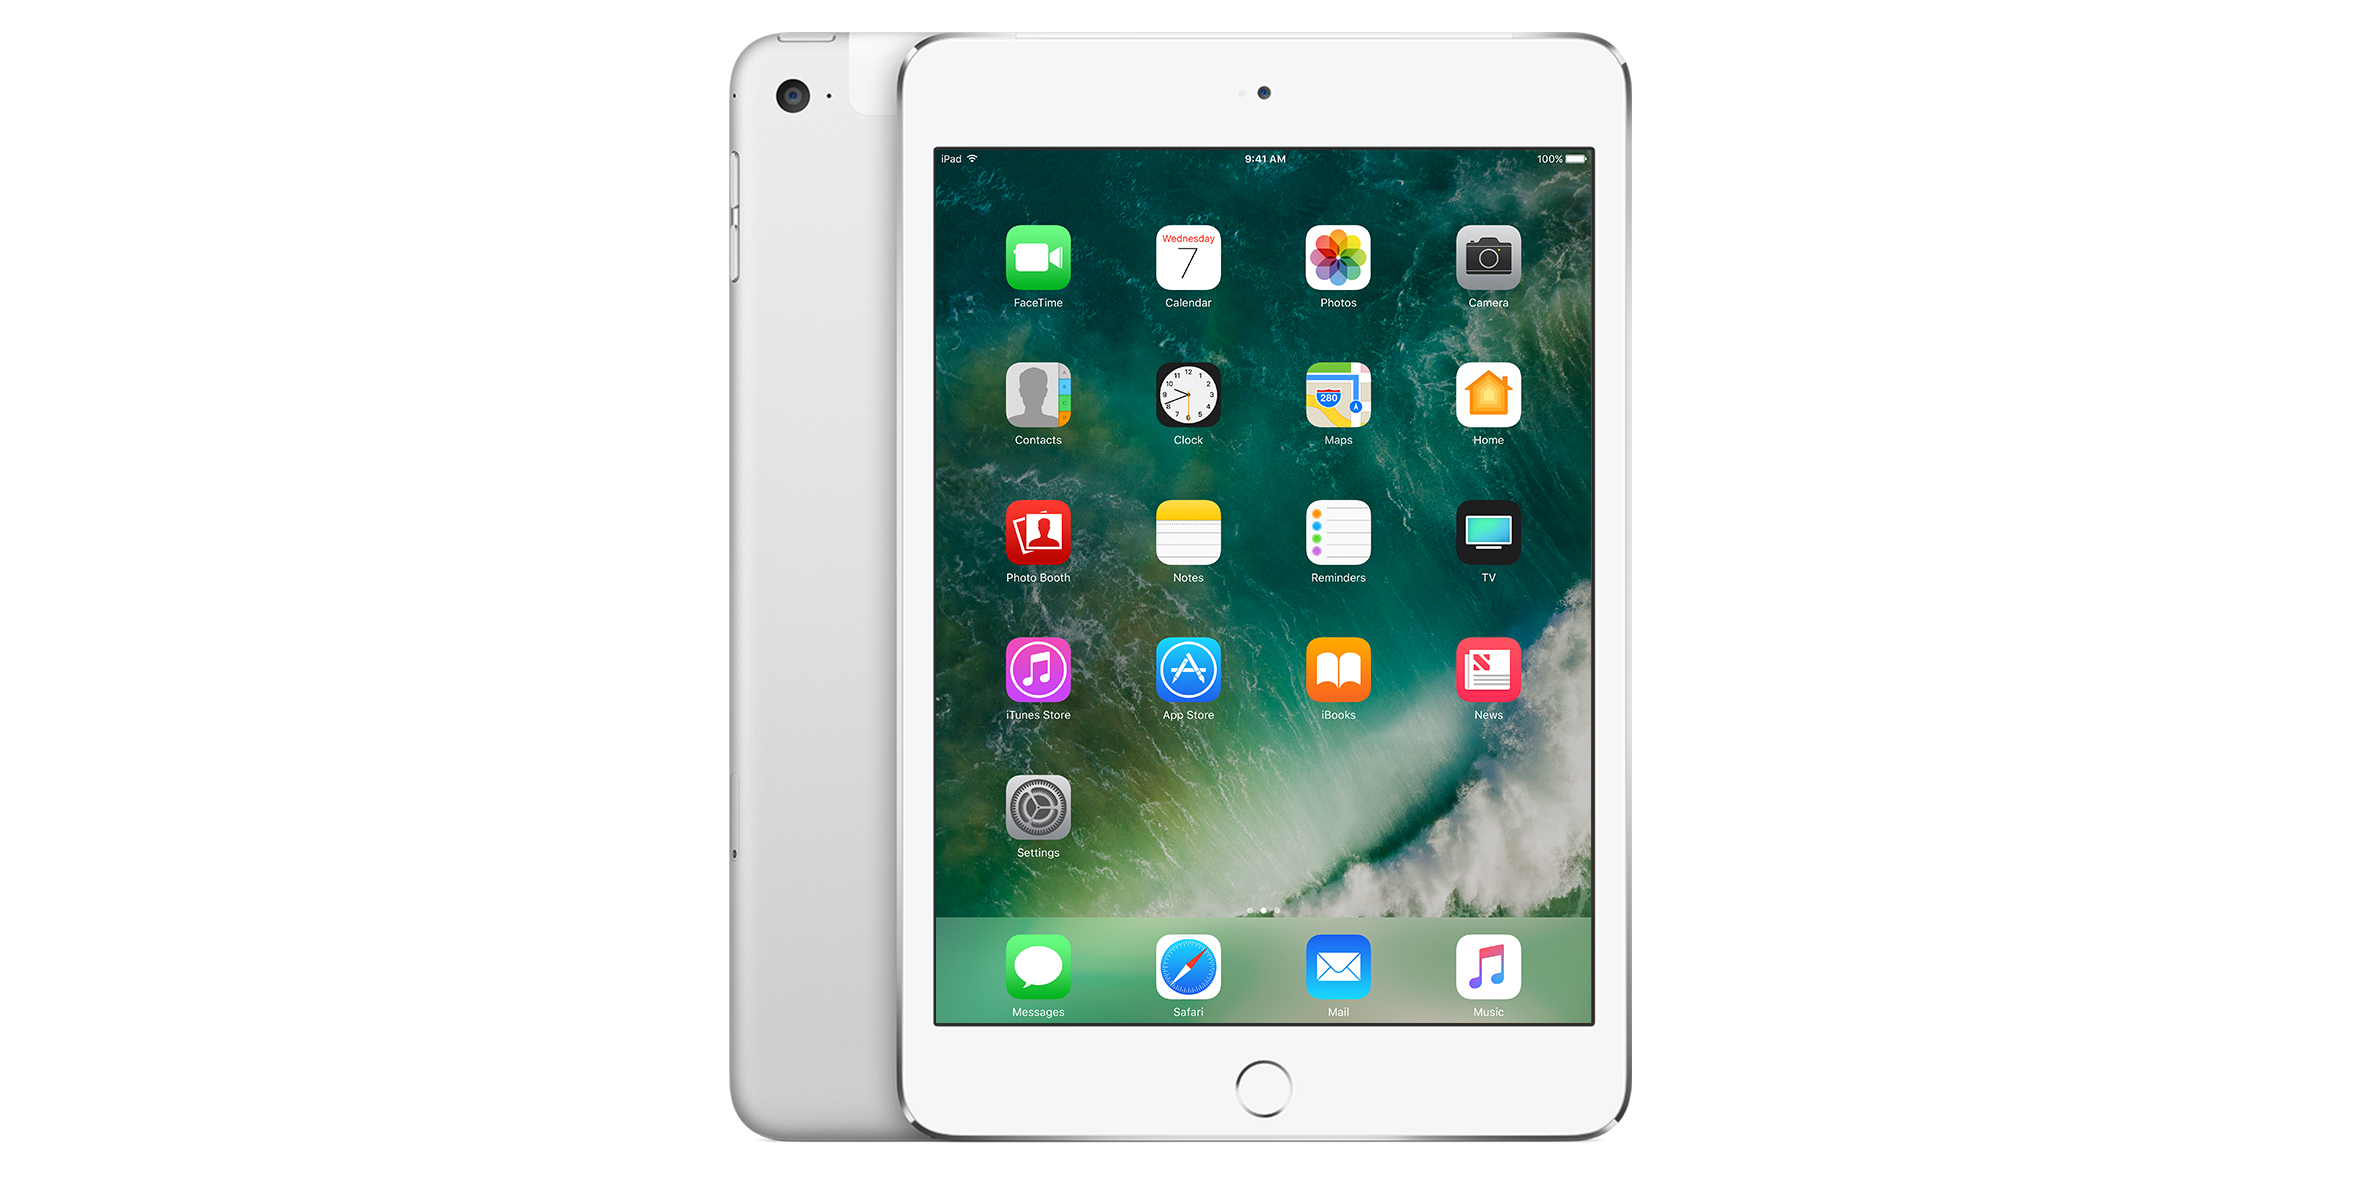 Grab an Apple iPad mini 4 Wi-Fi + Cellular unlocked at Best Buy